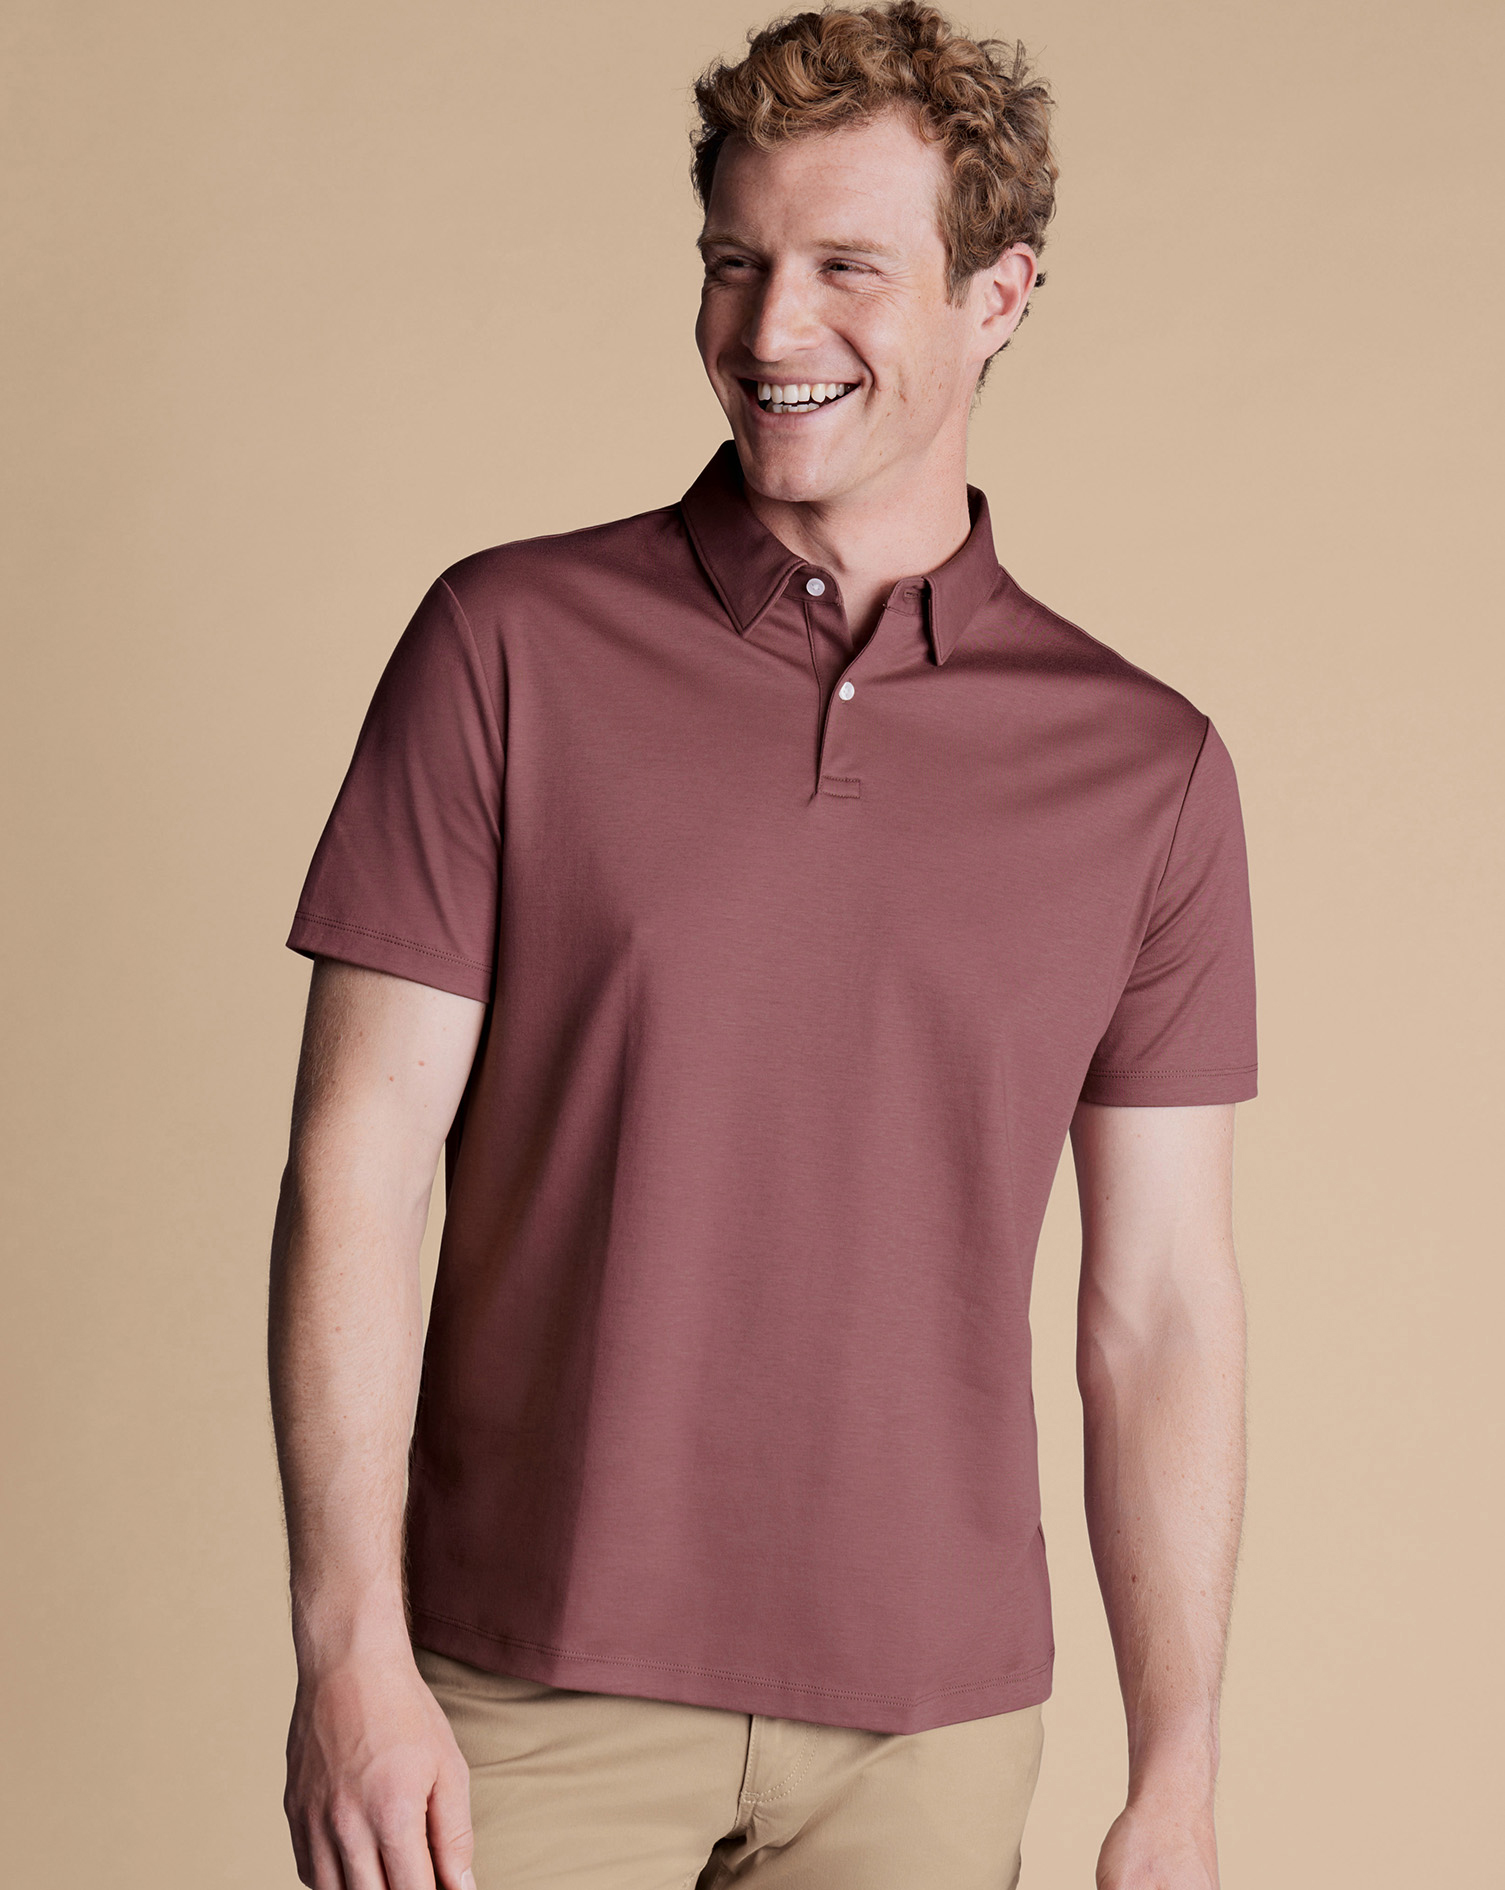 Men's Charles Tyrwhitt Smart Jersey Polo Shirt - Claret Pink Size Medium Cotton
